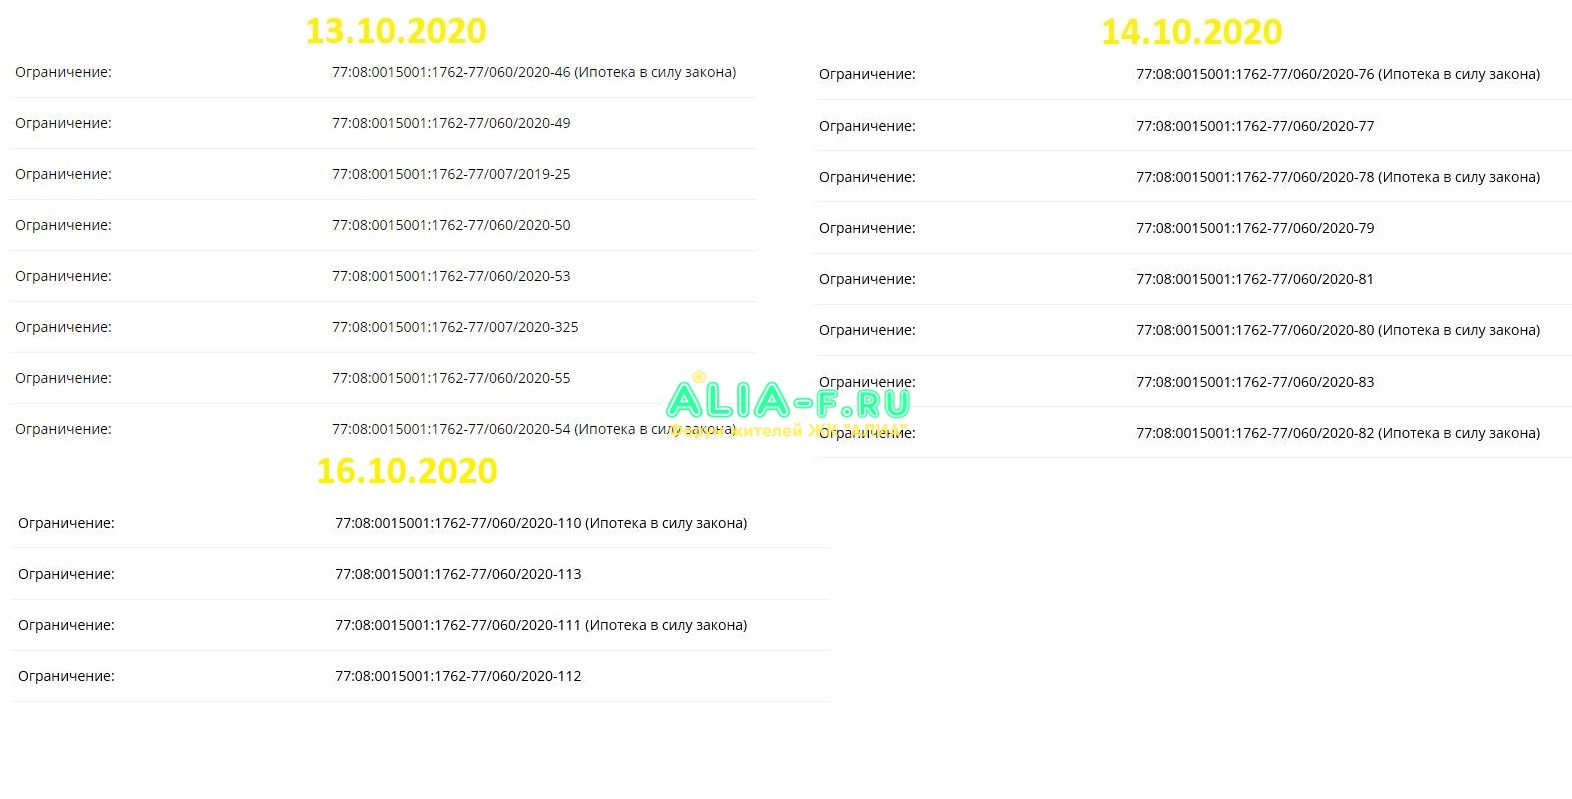 АЛИА росреестр 13.10.2020 -16.10.2020.JPG